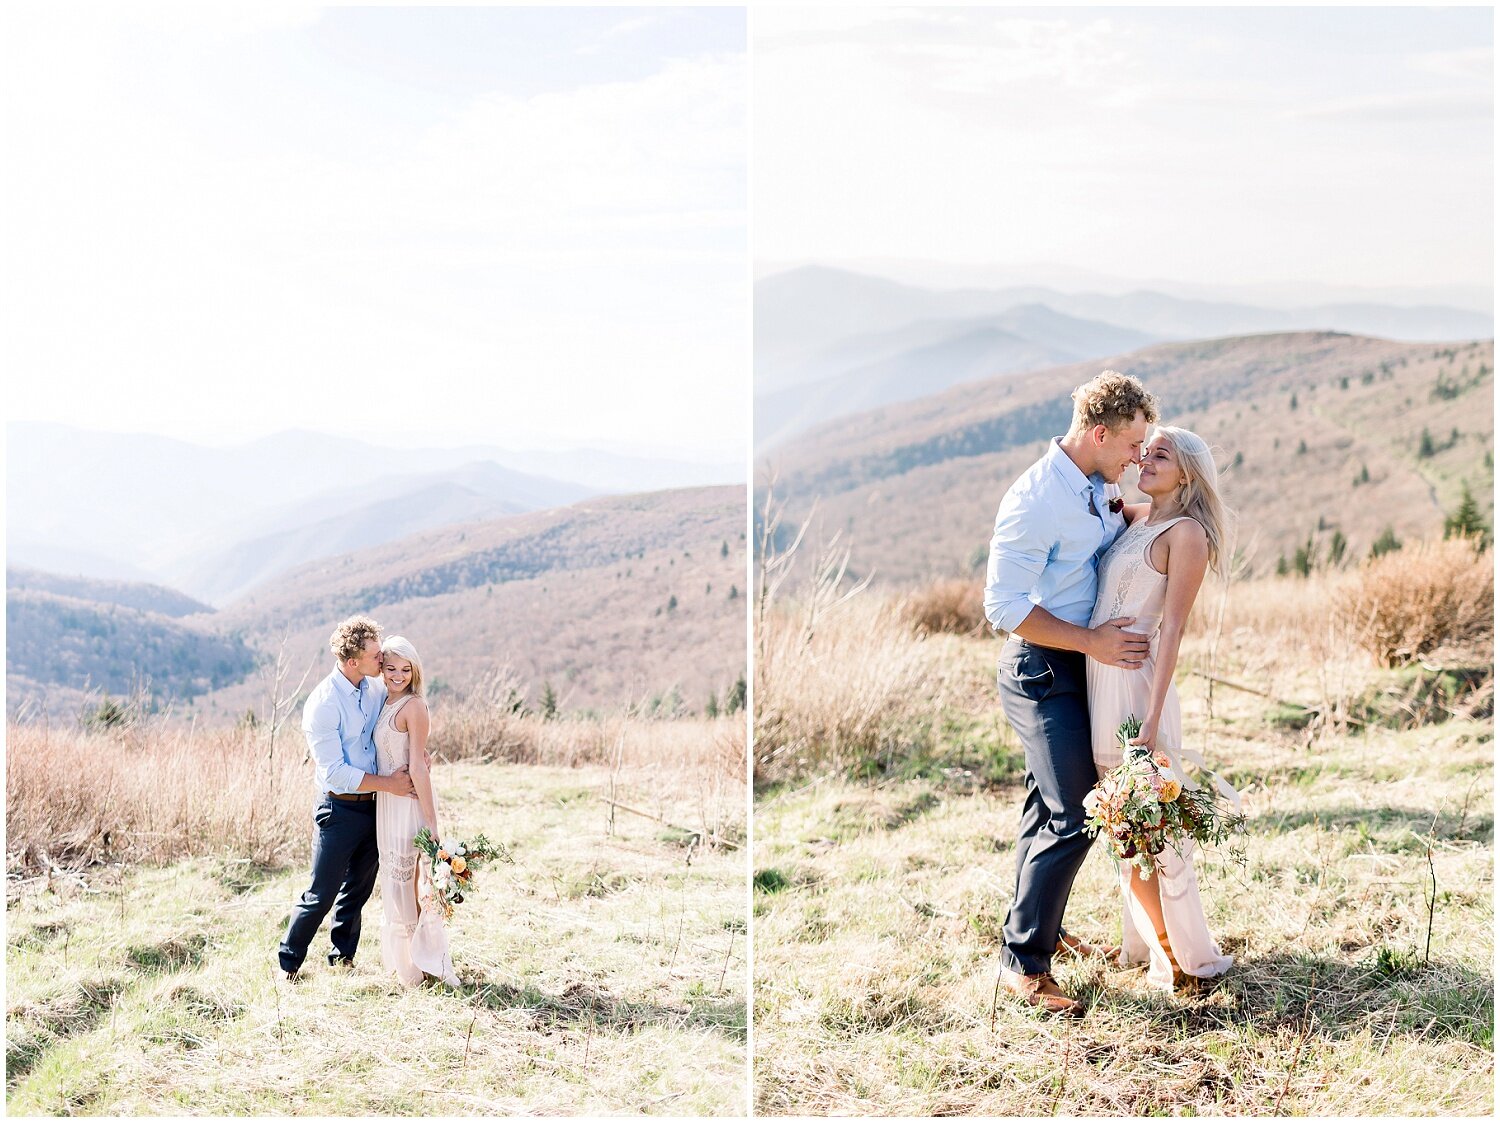 Carolina wedding and elopement photographer